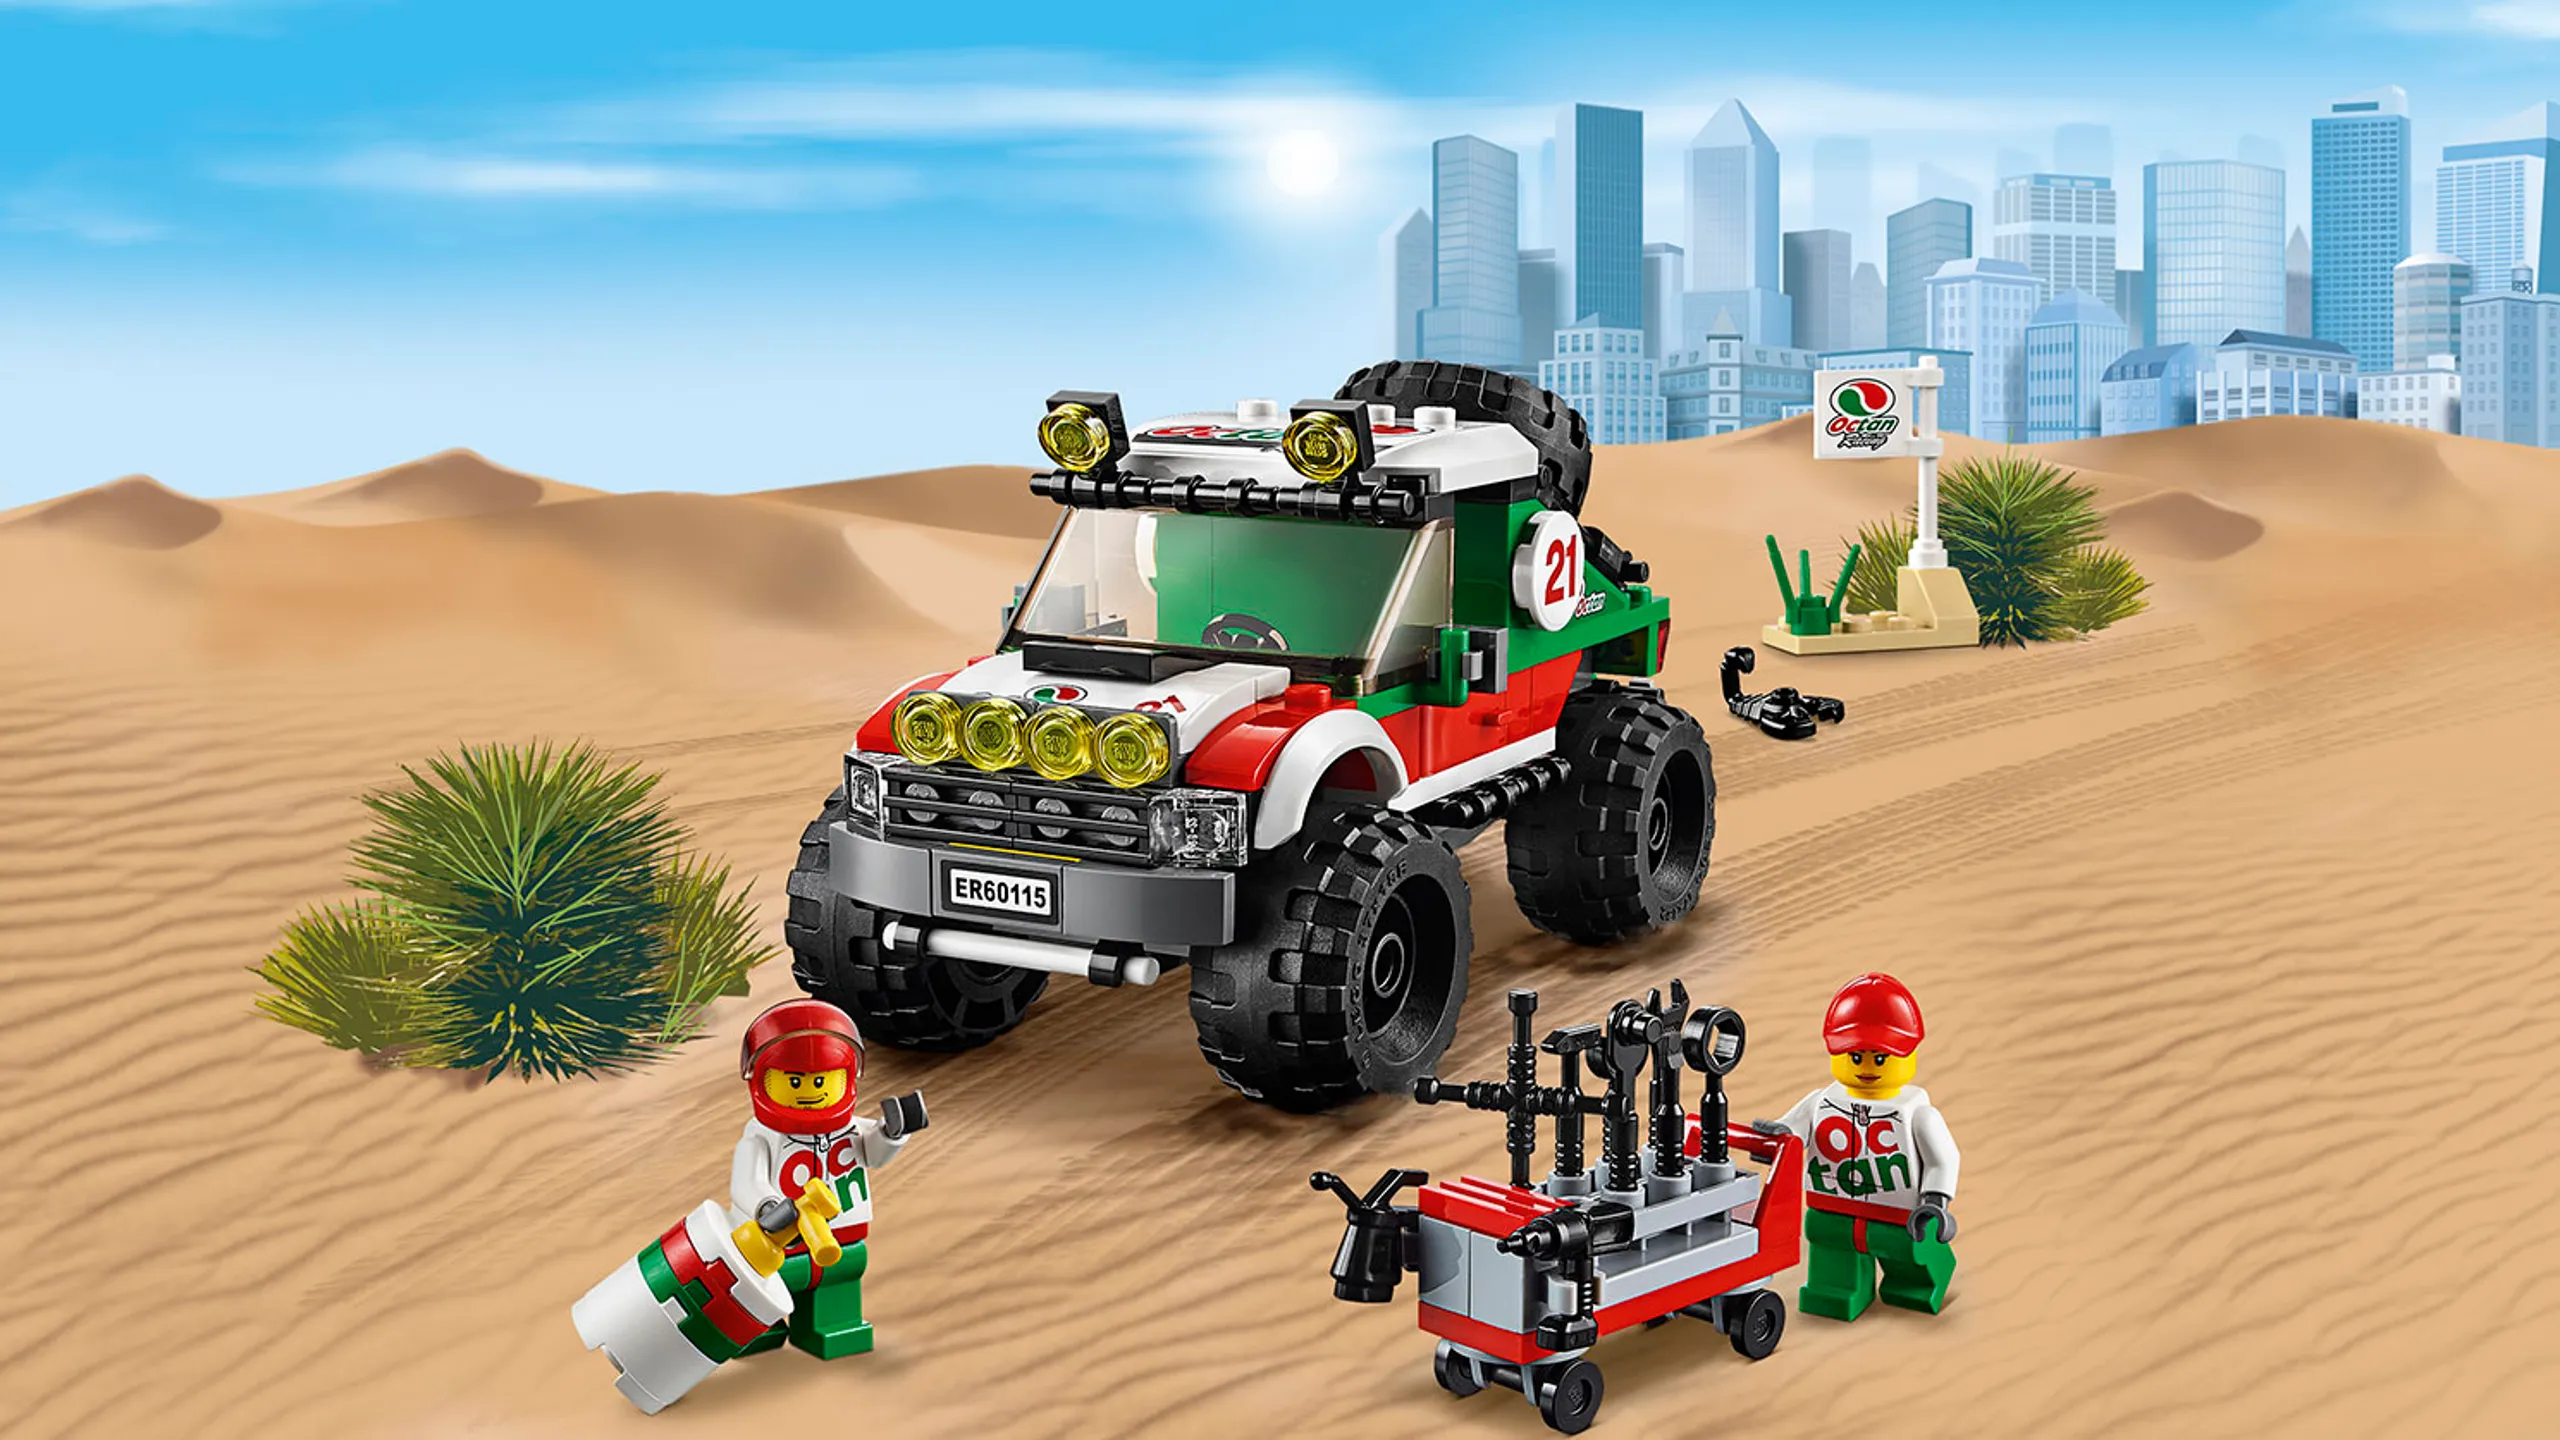 Superpojazdy LEGO City: terenówka z minifigurkami kierowcy i mechanika — Terenówka 4 x 4 60115